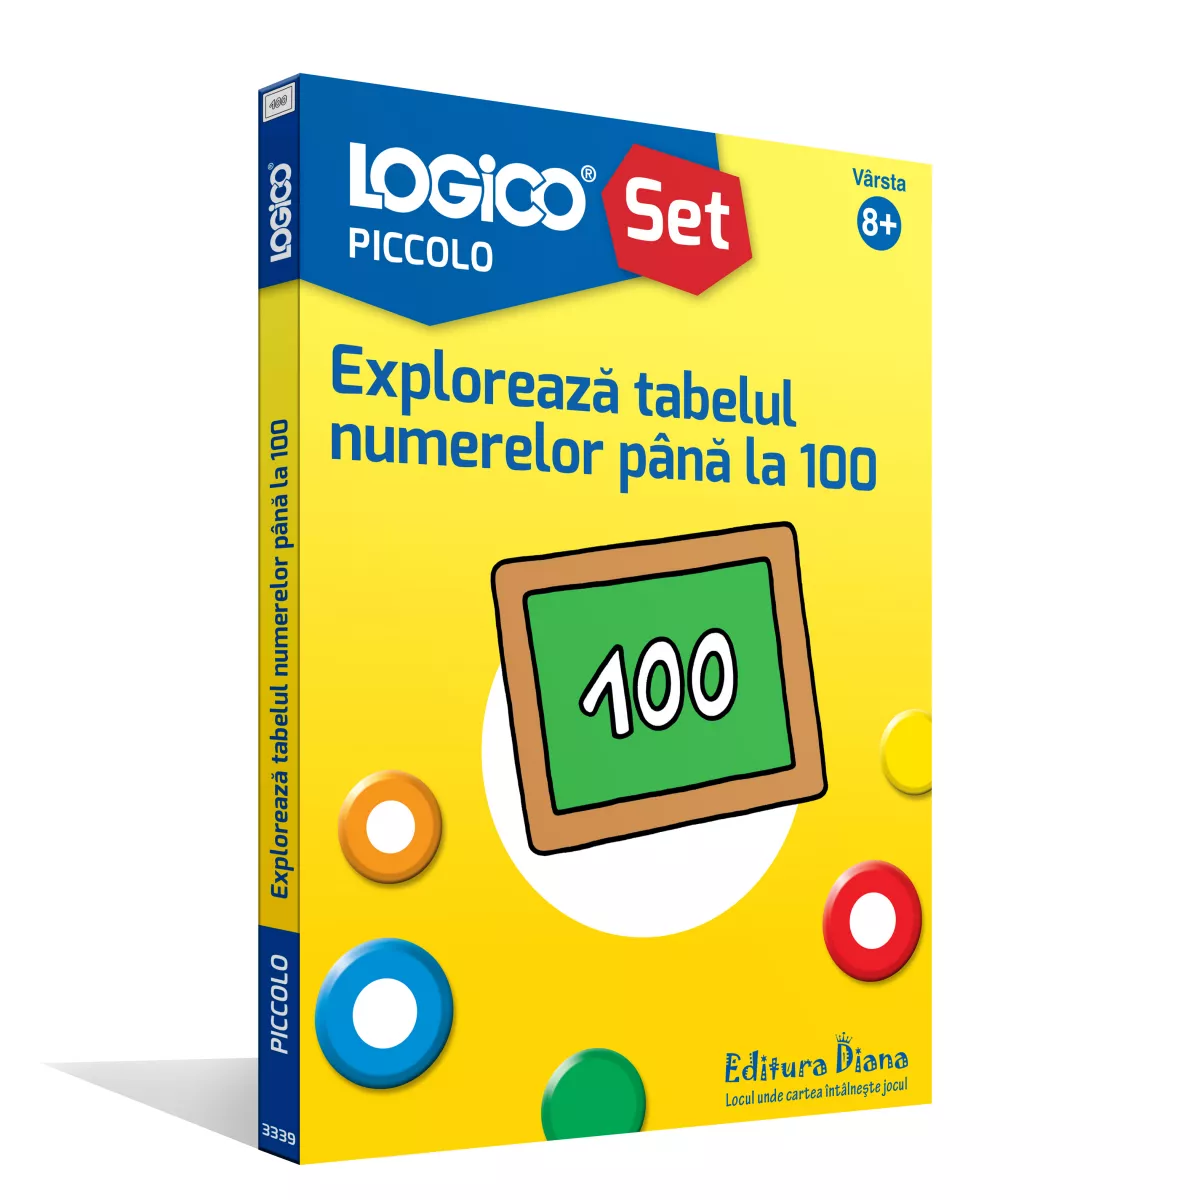 LOGICO PICCOLO - Explorează tabelul numerelor până la 100 (8+)